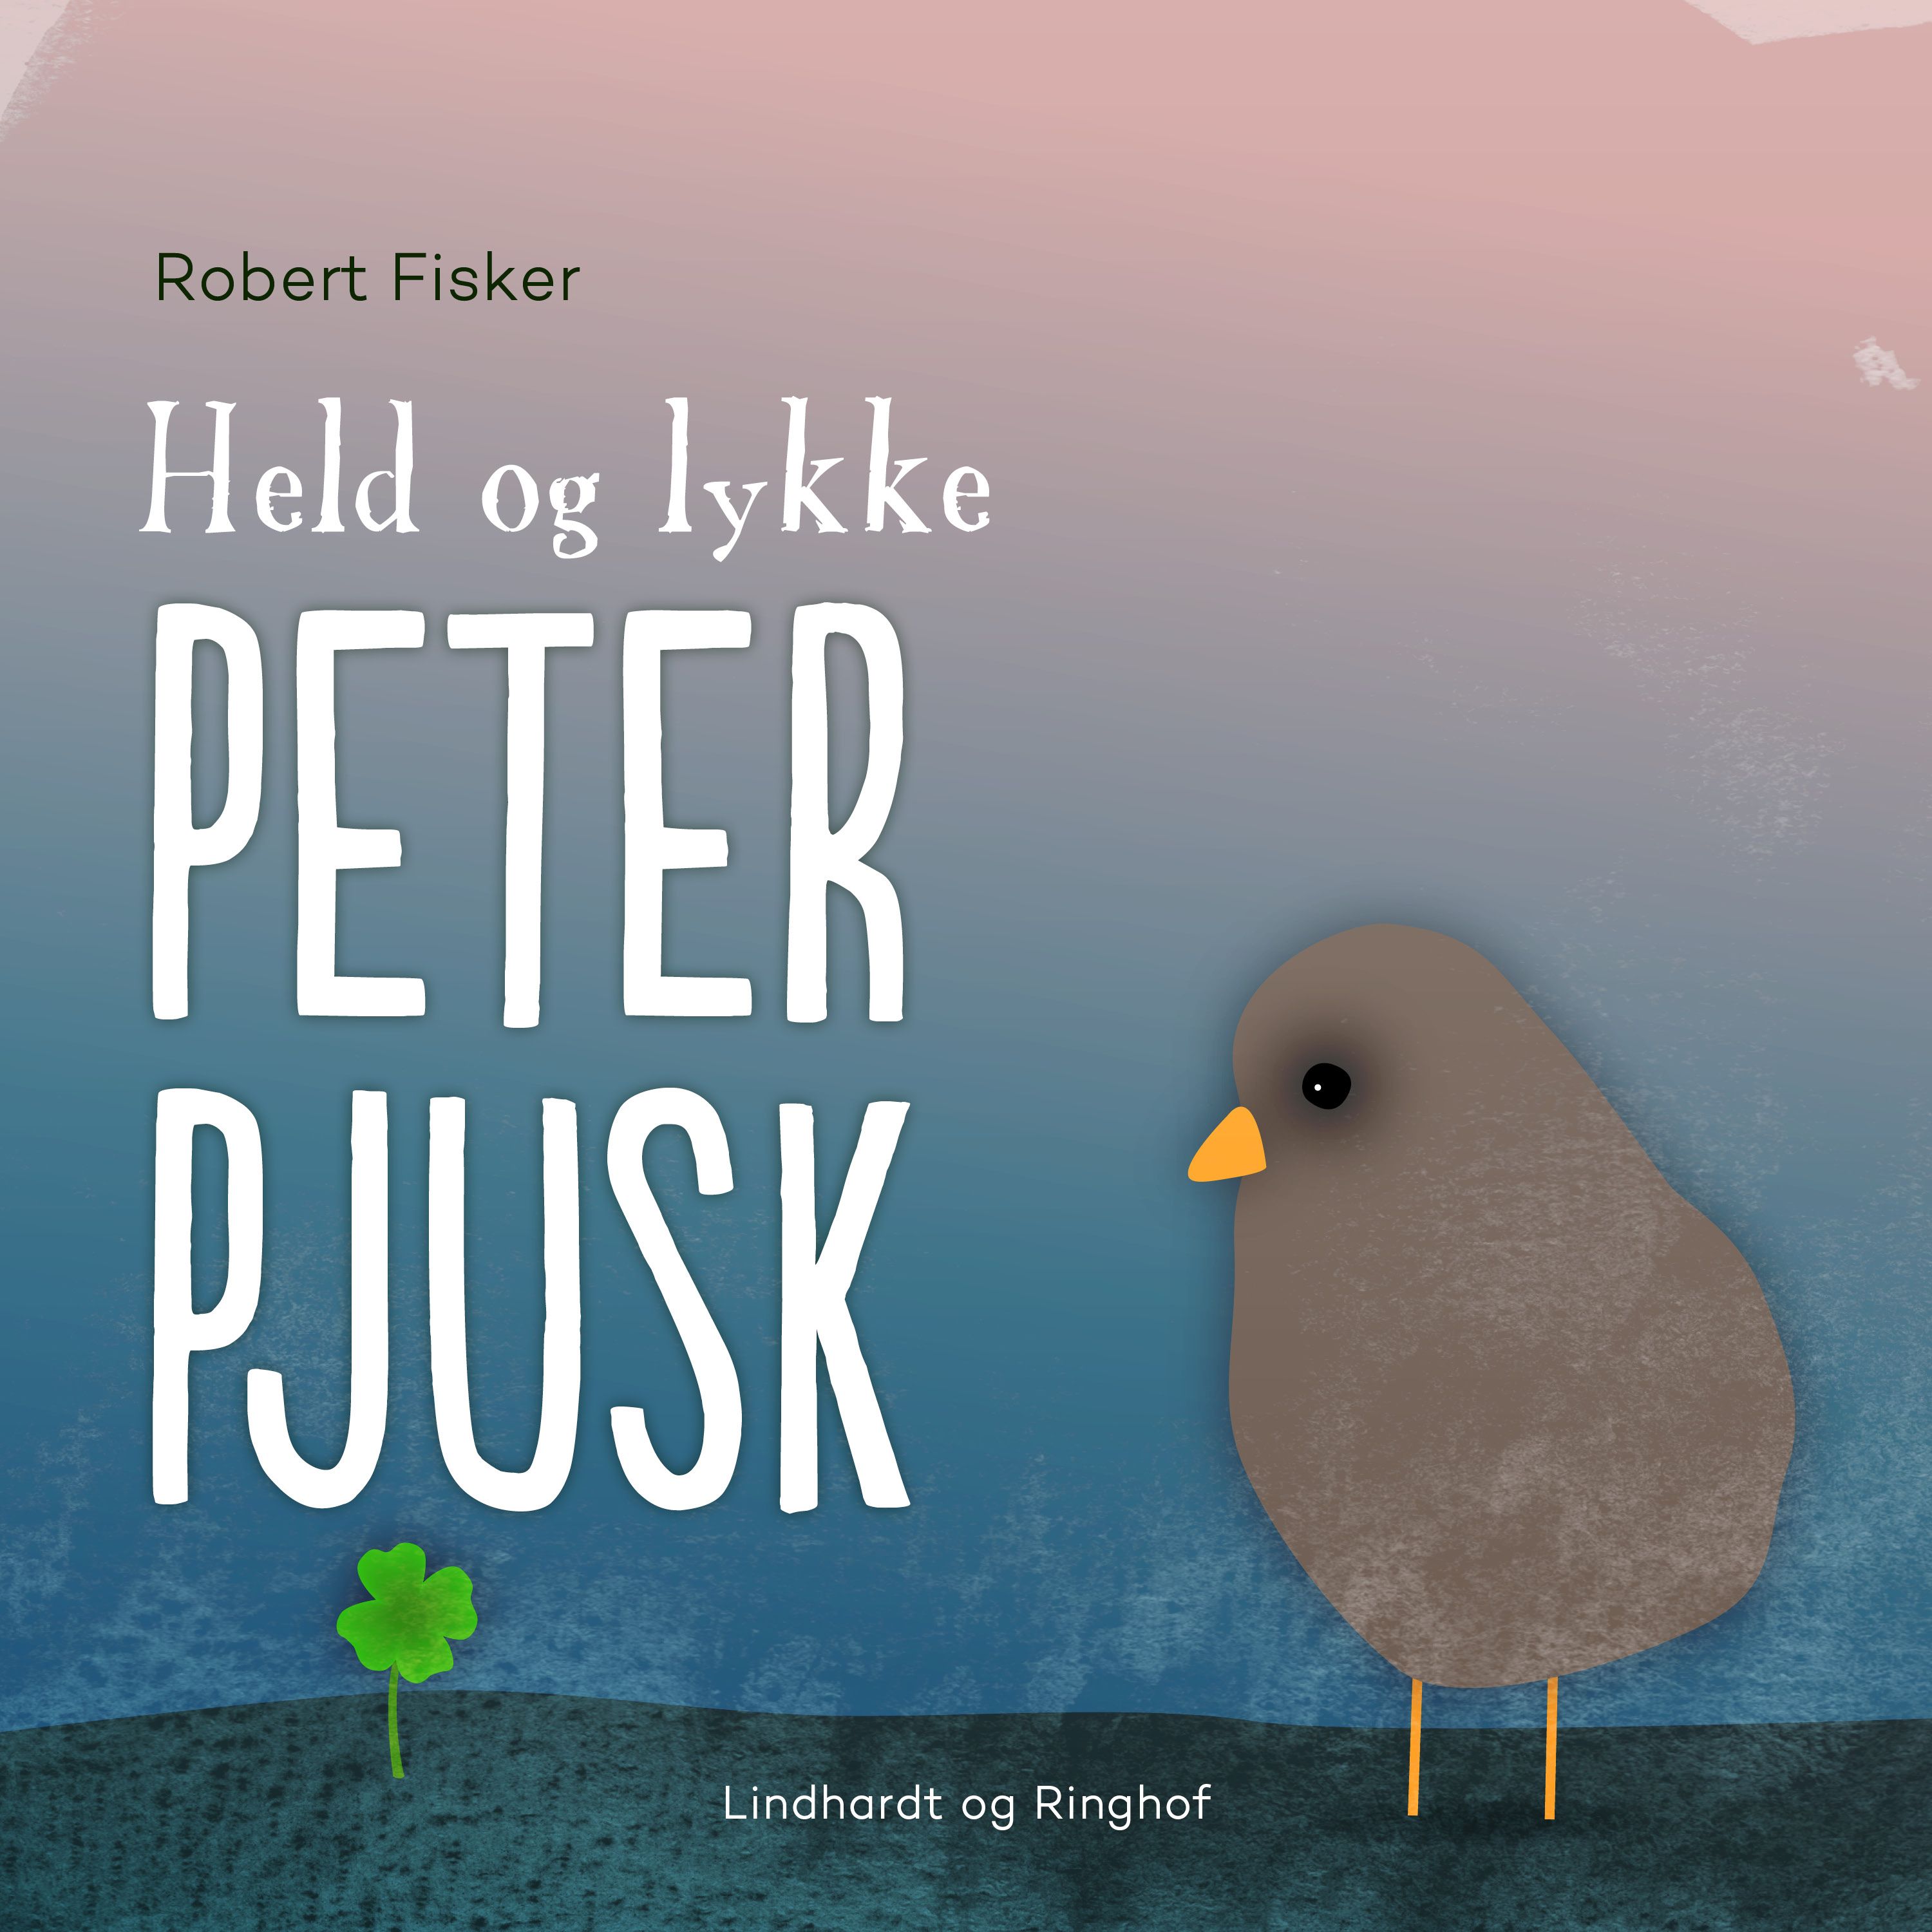 Held og lykke, Peter Pjusk, lydbog af Robert Fisker